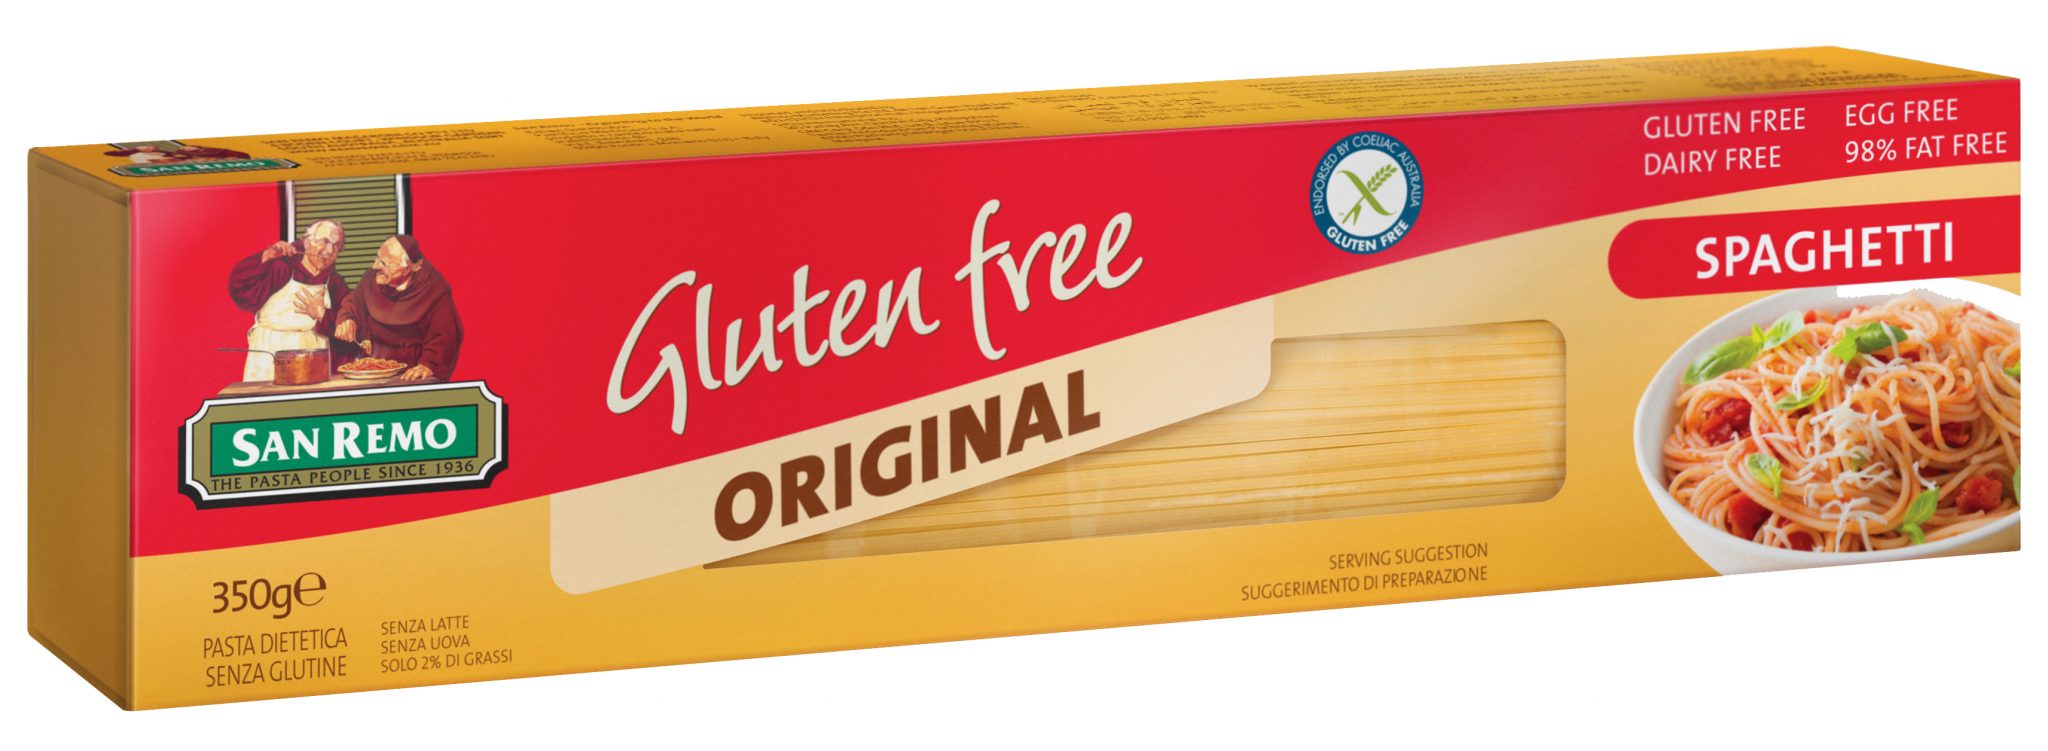 Alergico al gluten